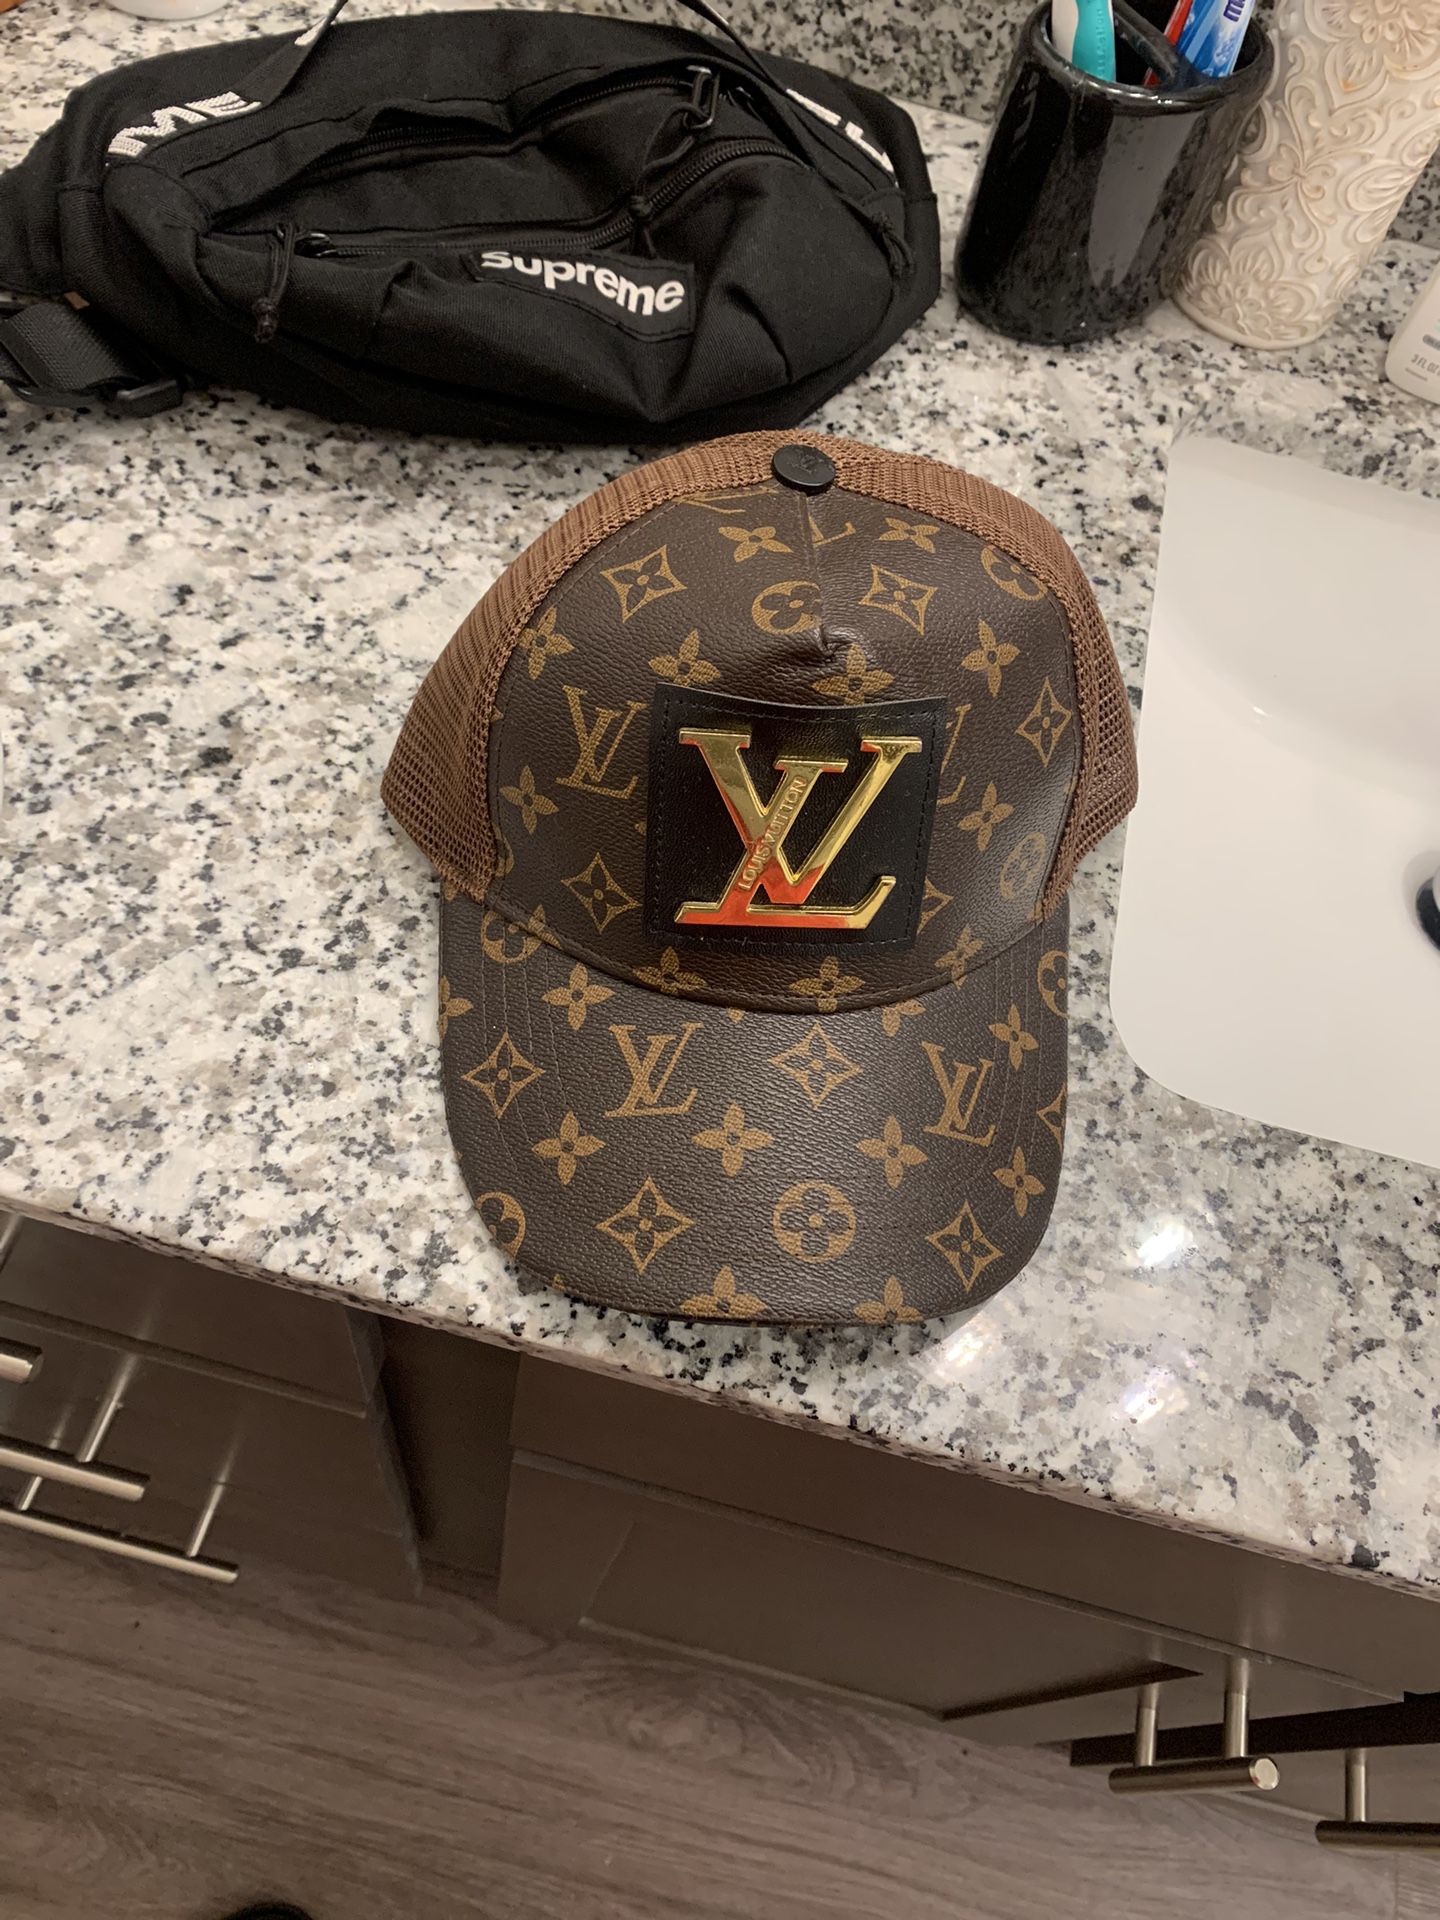 New York Louis Vuitton Men’s Cap for Sale in Manchaca, TX - OfferUp